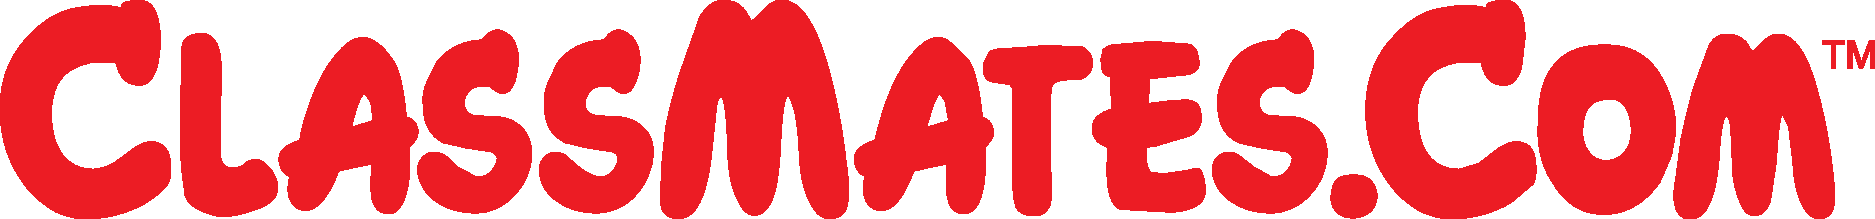 ClassMates com Logo Vector